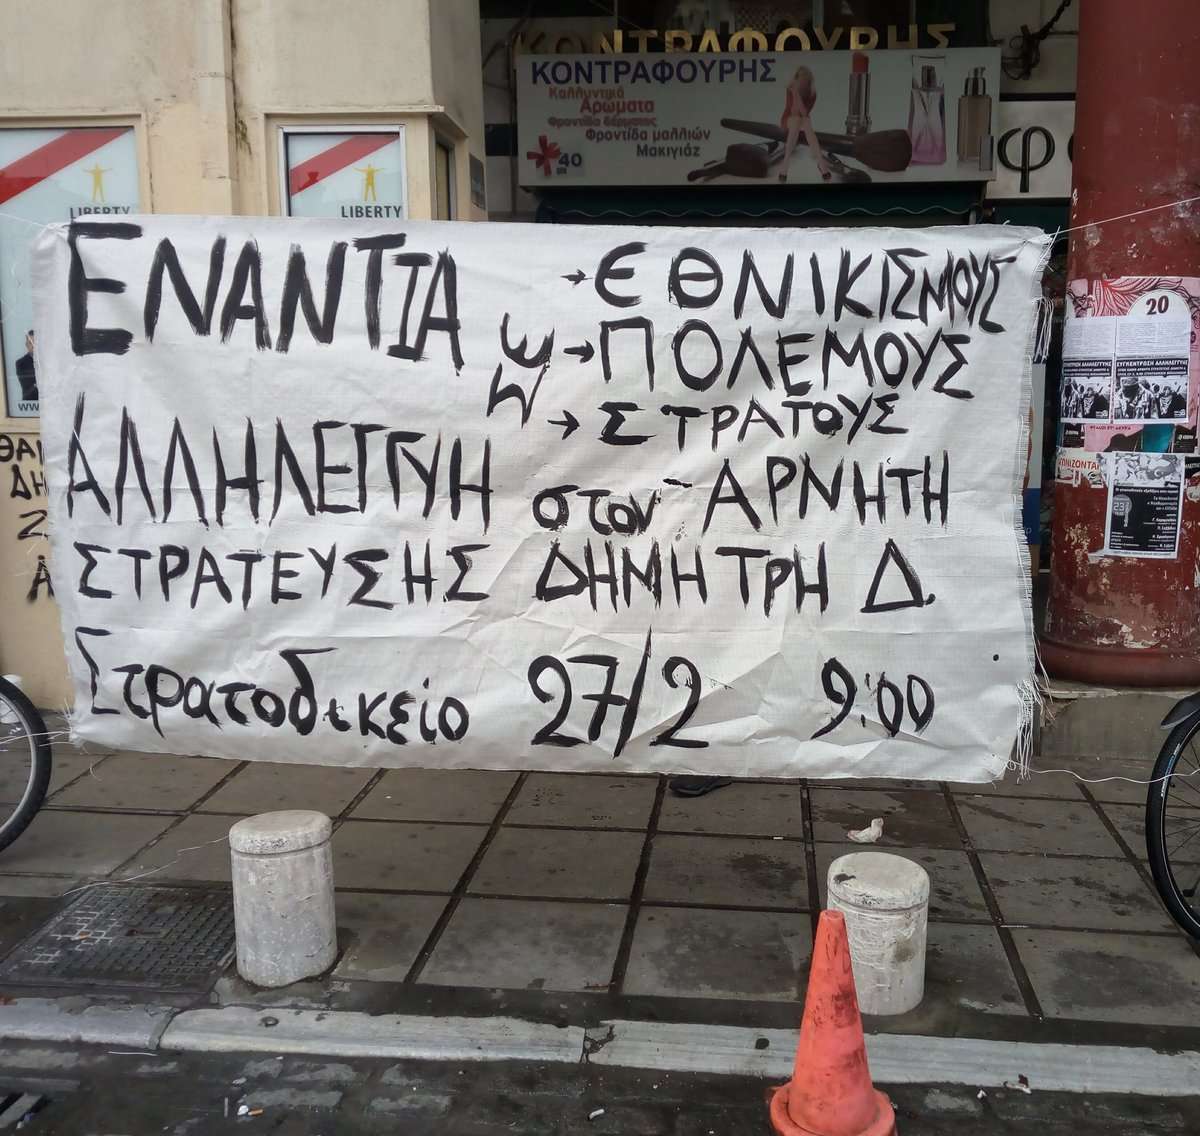 Θεσσαλονίκη: Ενημέρωση από τη μικροφωνική αλληλεγγύης στους ολικούς αρνητές στράτευσης